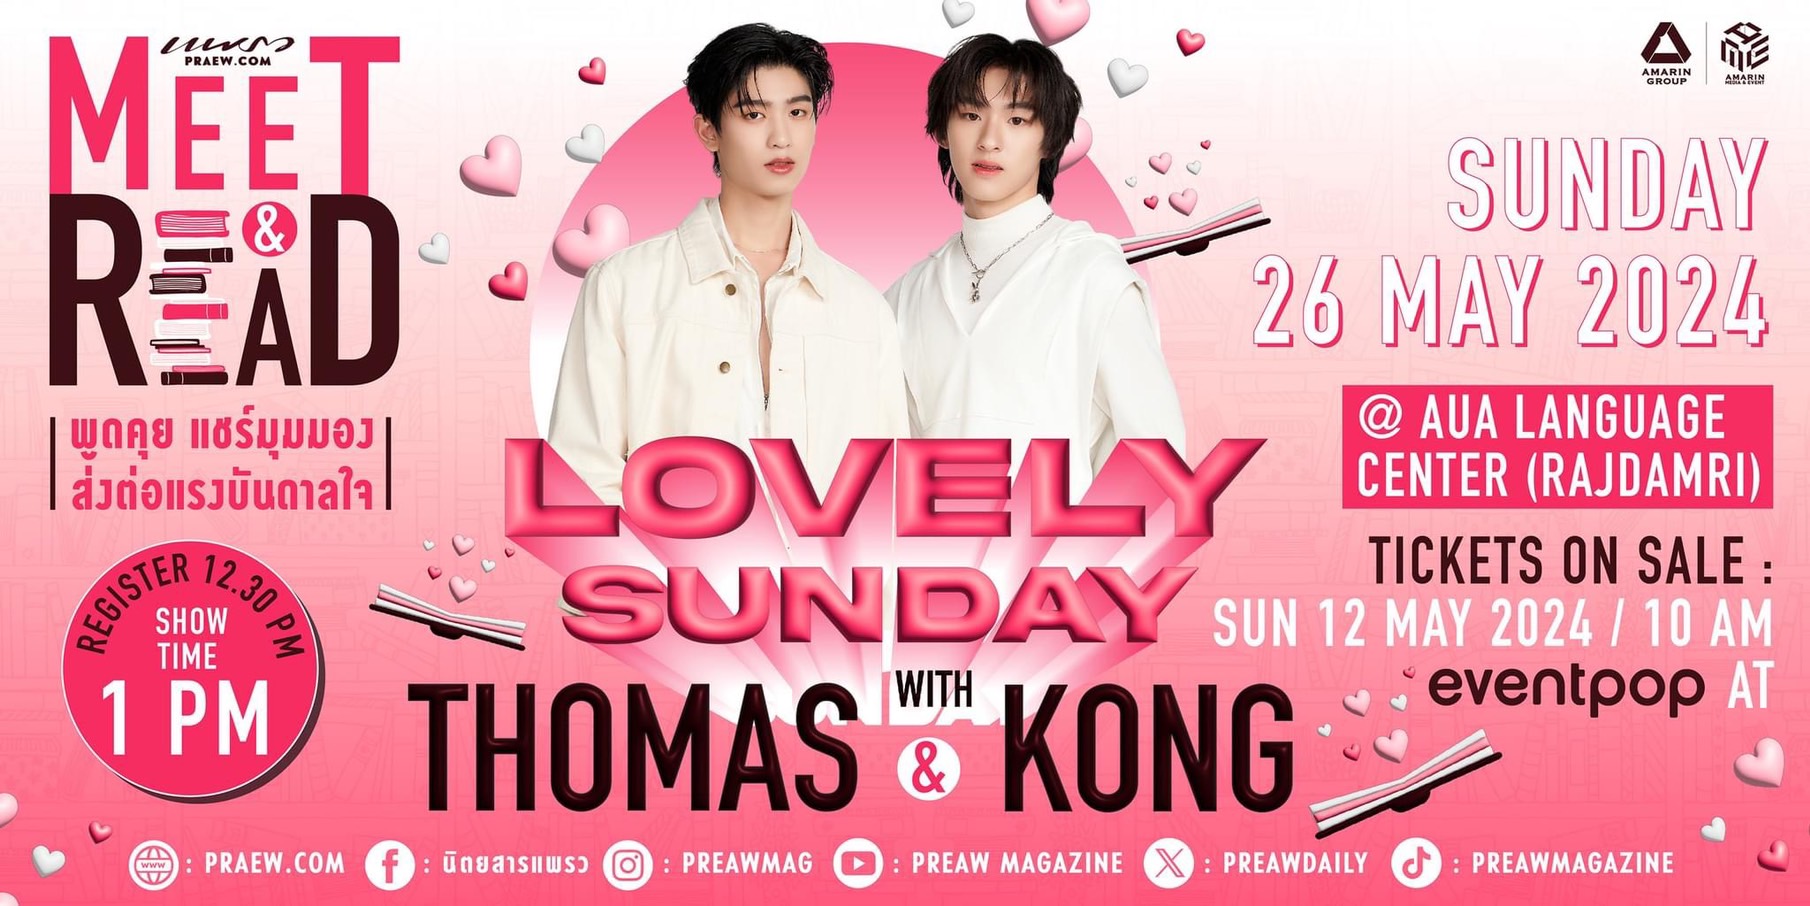 วันอาทิตย์ของคุณจะสดใสยิ่งกว่าเดิม ที่งาน Praew Meet & Read “Lovely Sunday with Thomas  Kong”